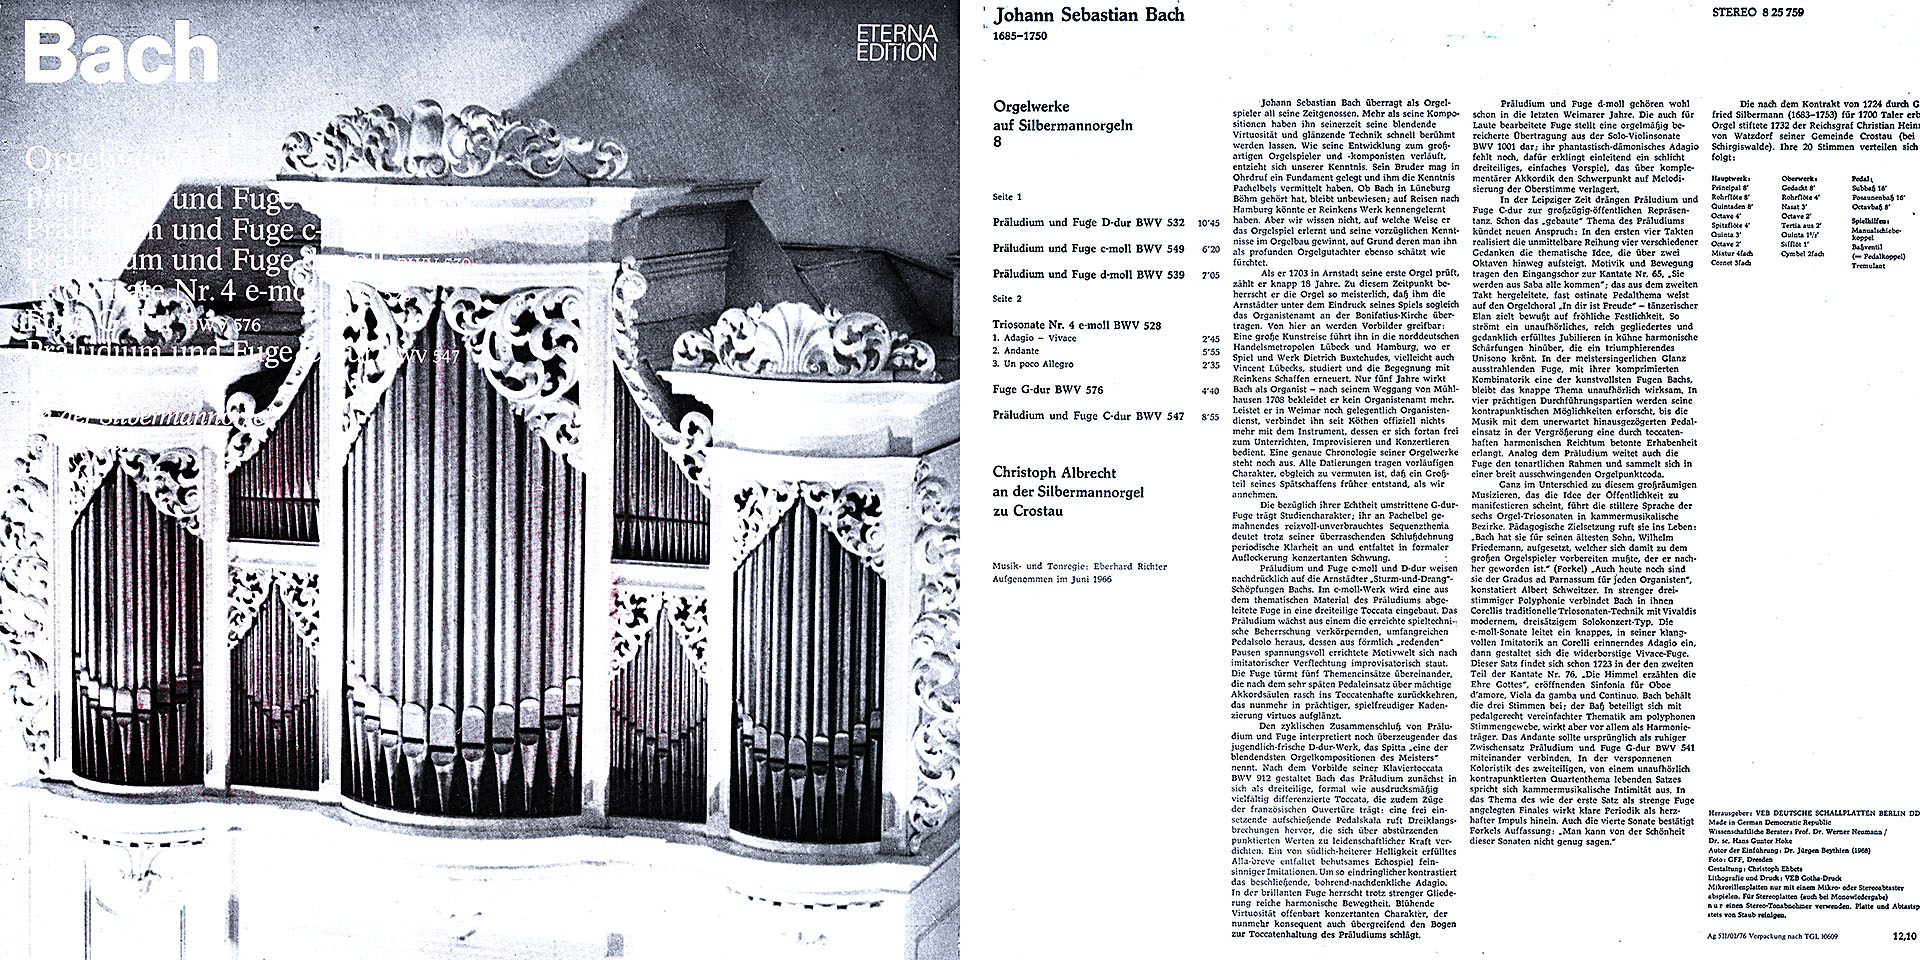 Johann Sebastian Bach - Orgelwerke 8 - Christoph Albrecht an der Silbermannorgel zu Crostau